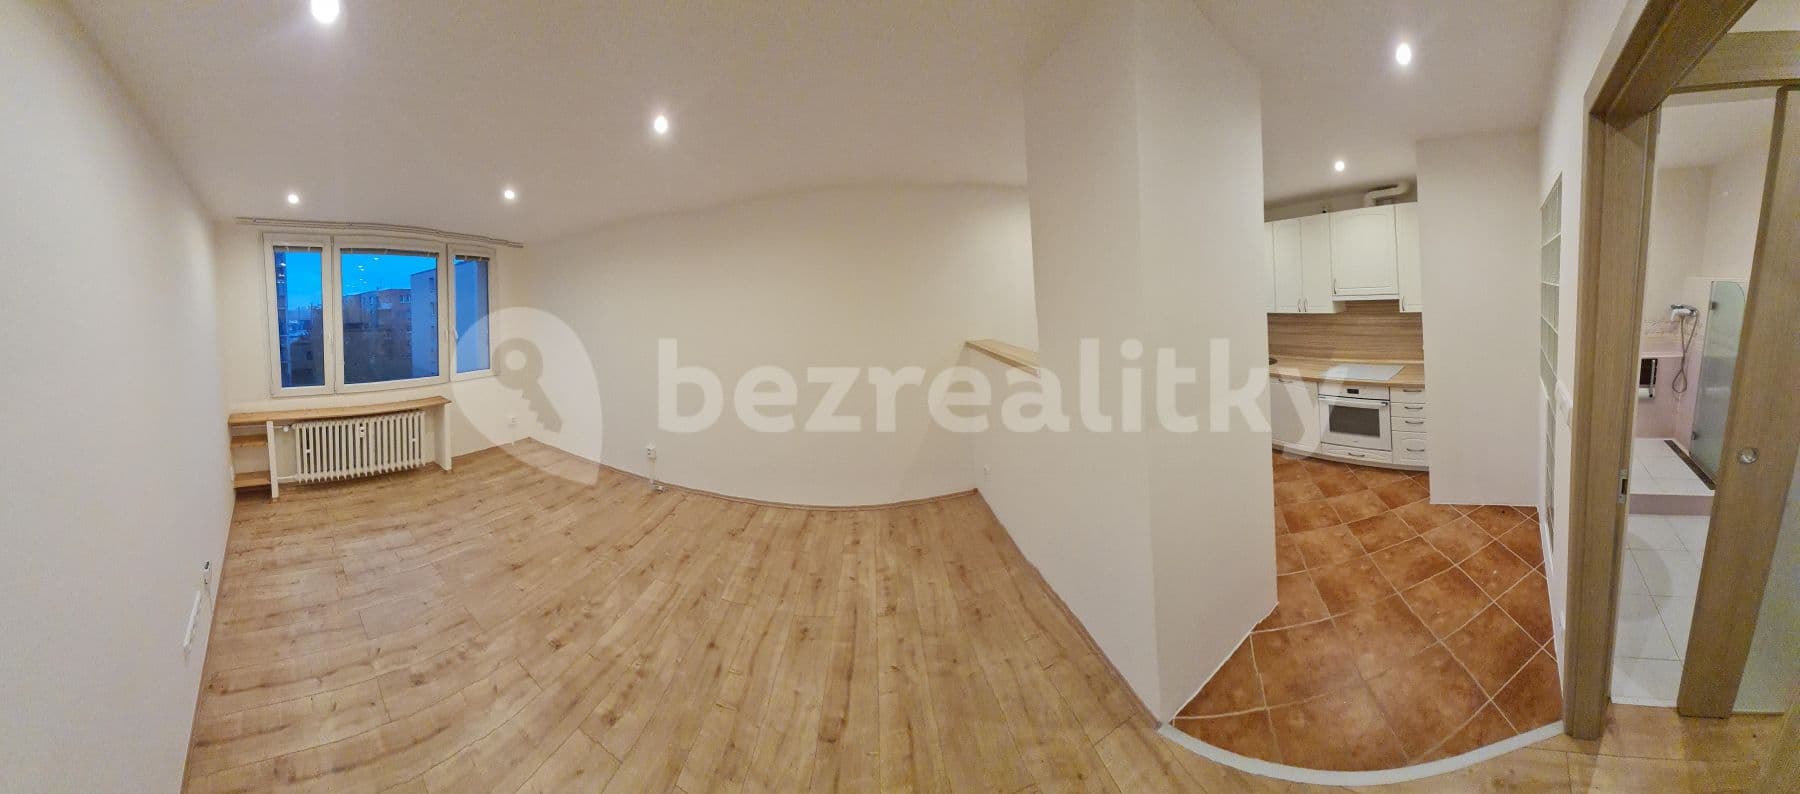 1 bedroom with open-plan kitchen flat to rent, 41 m², V Zápolí, Prague, Prague